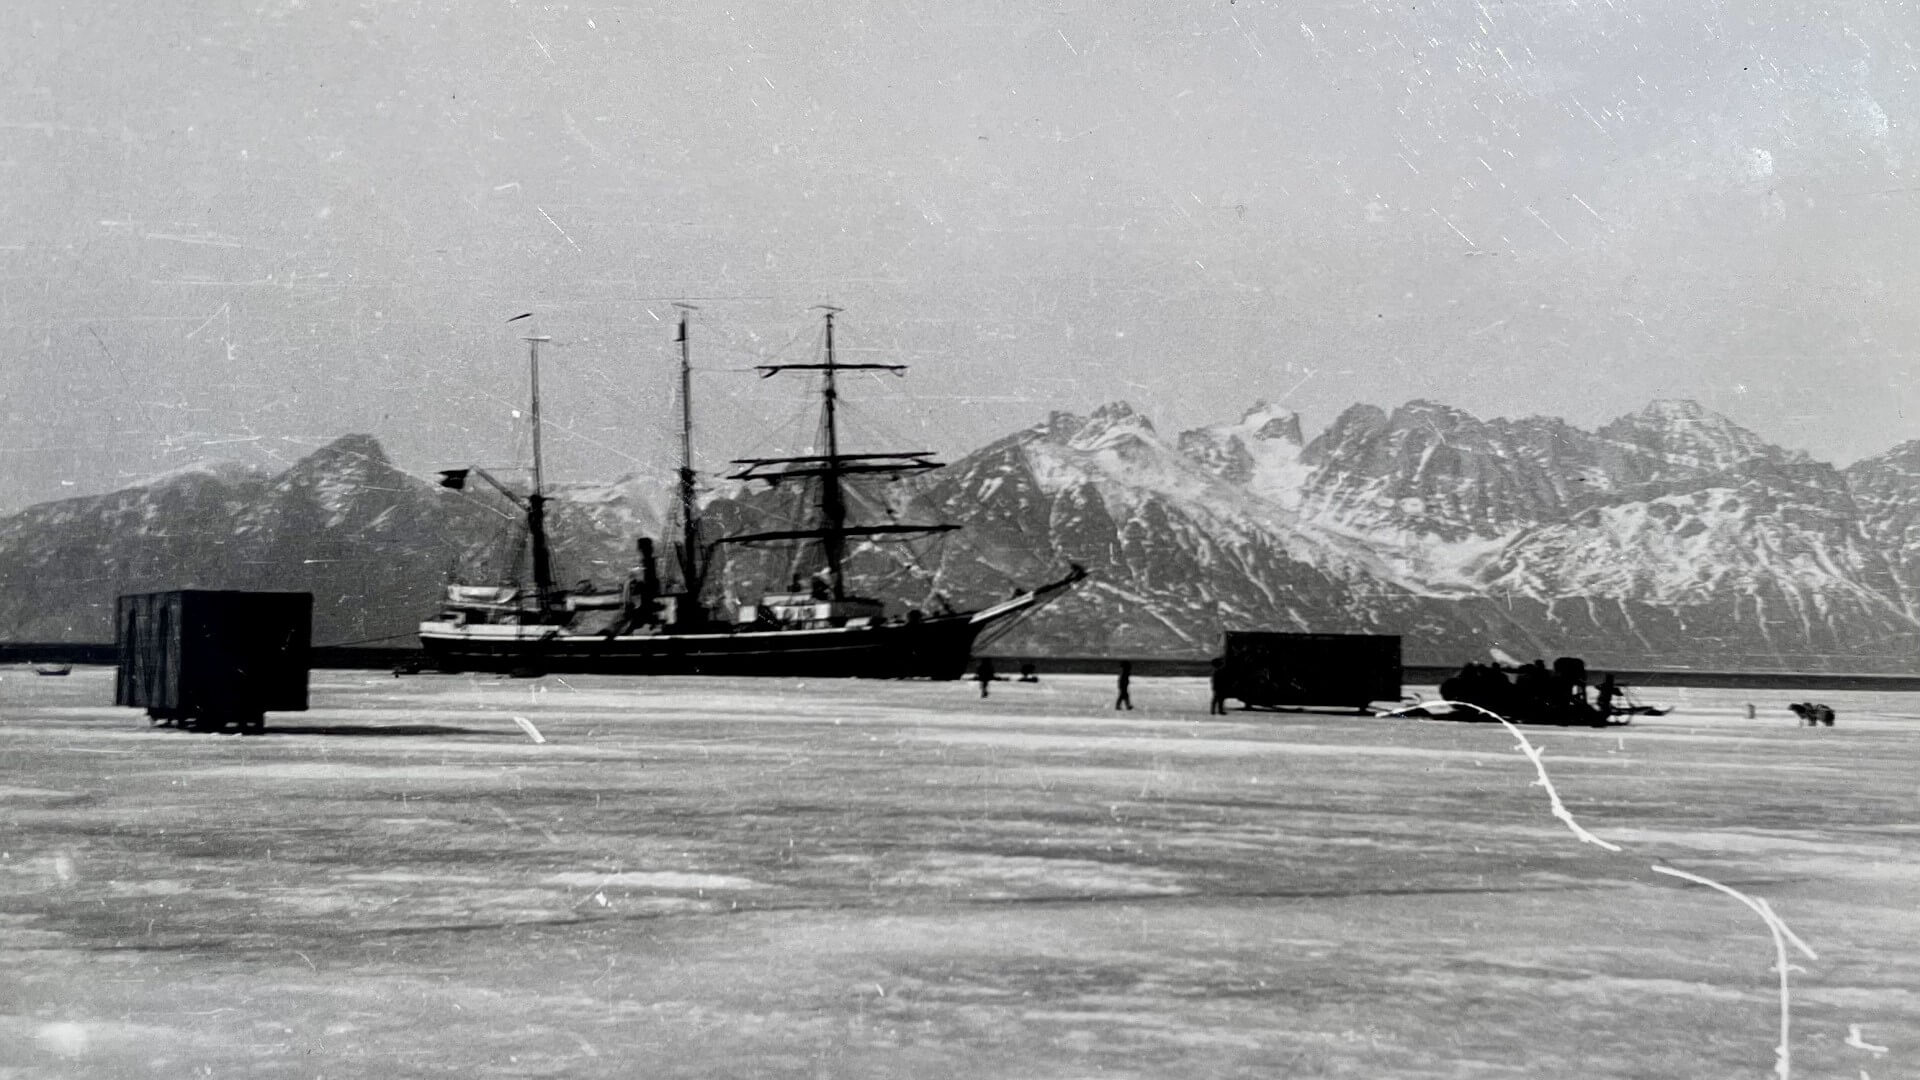 Arktis Tours - Expedition Grönland auf den Spuren Alfred Wegeners